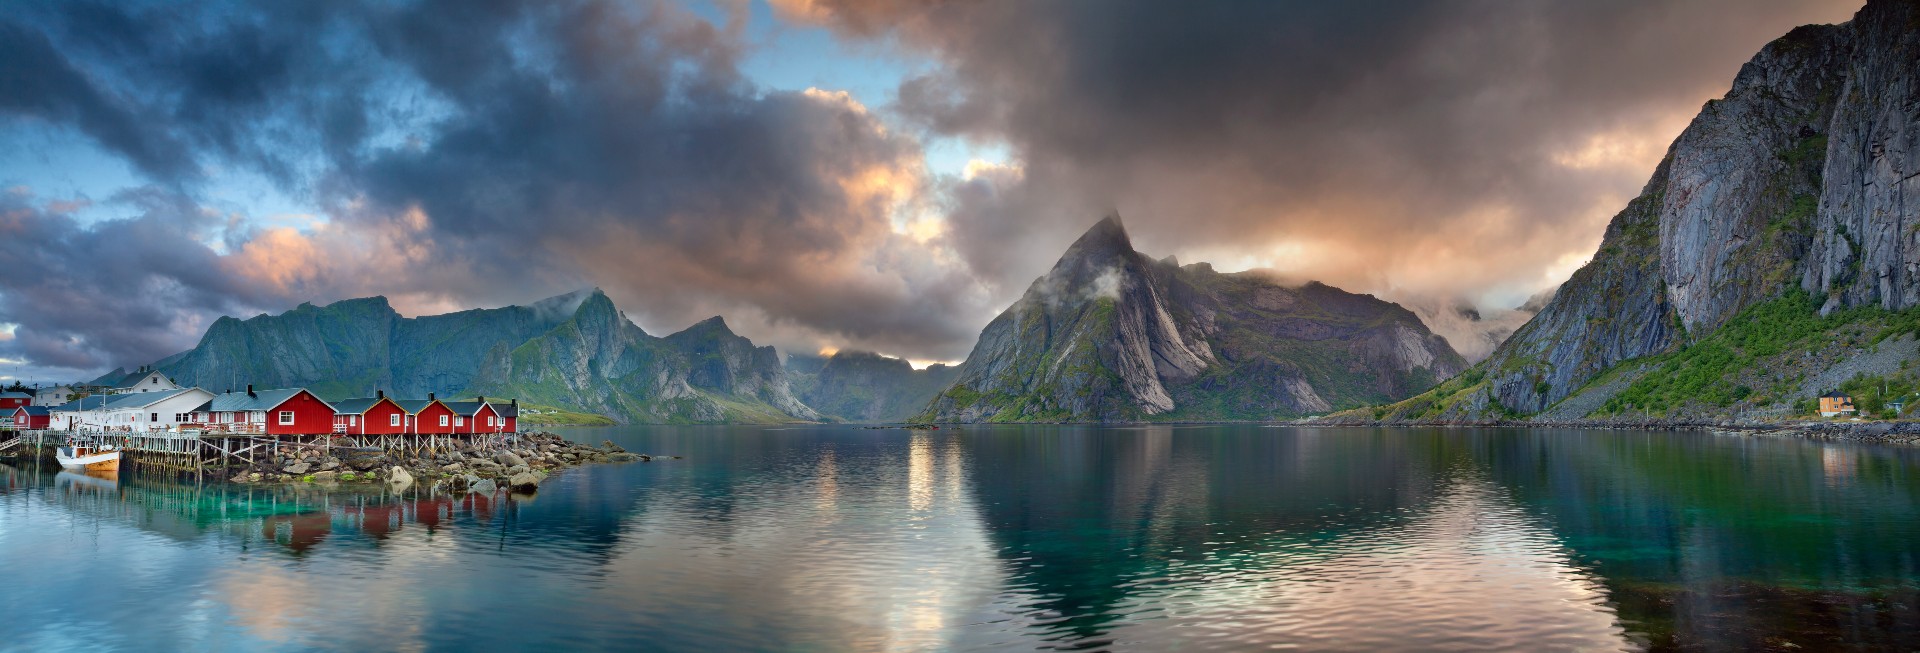 Lofoten islands - Best Norway Cruises